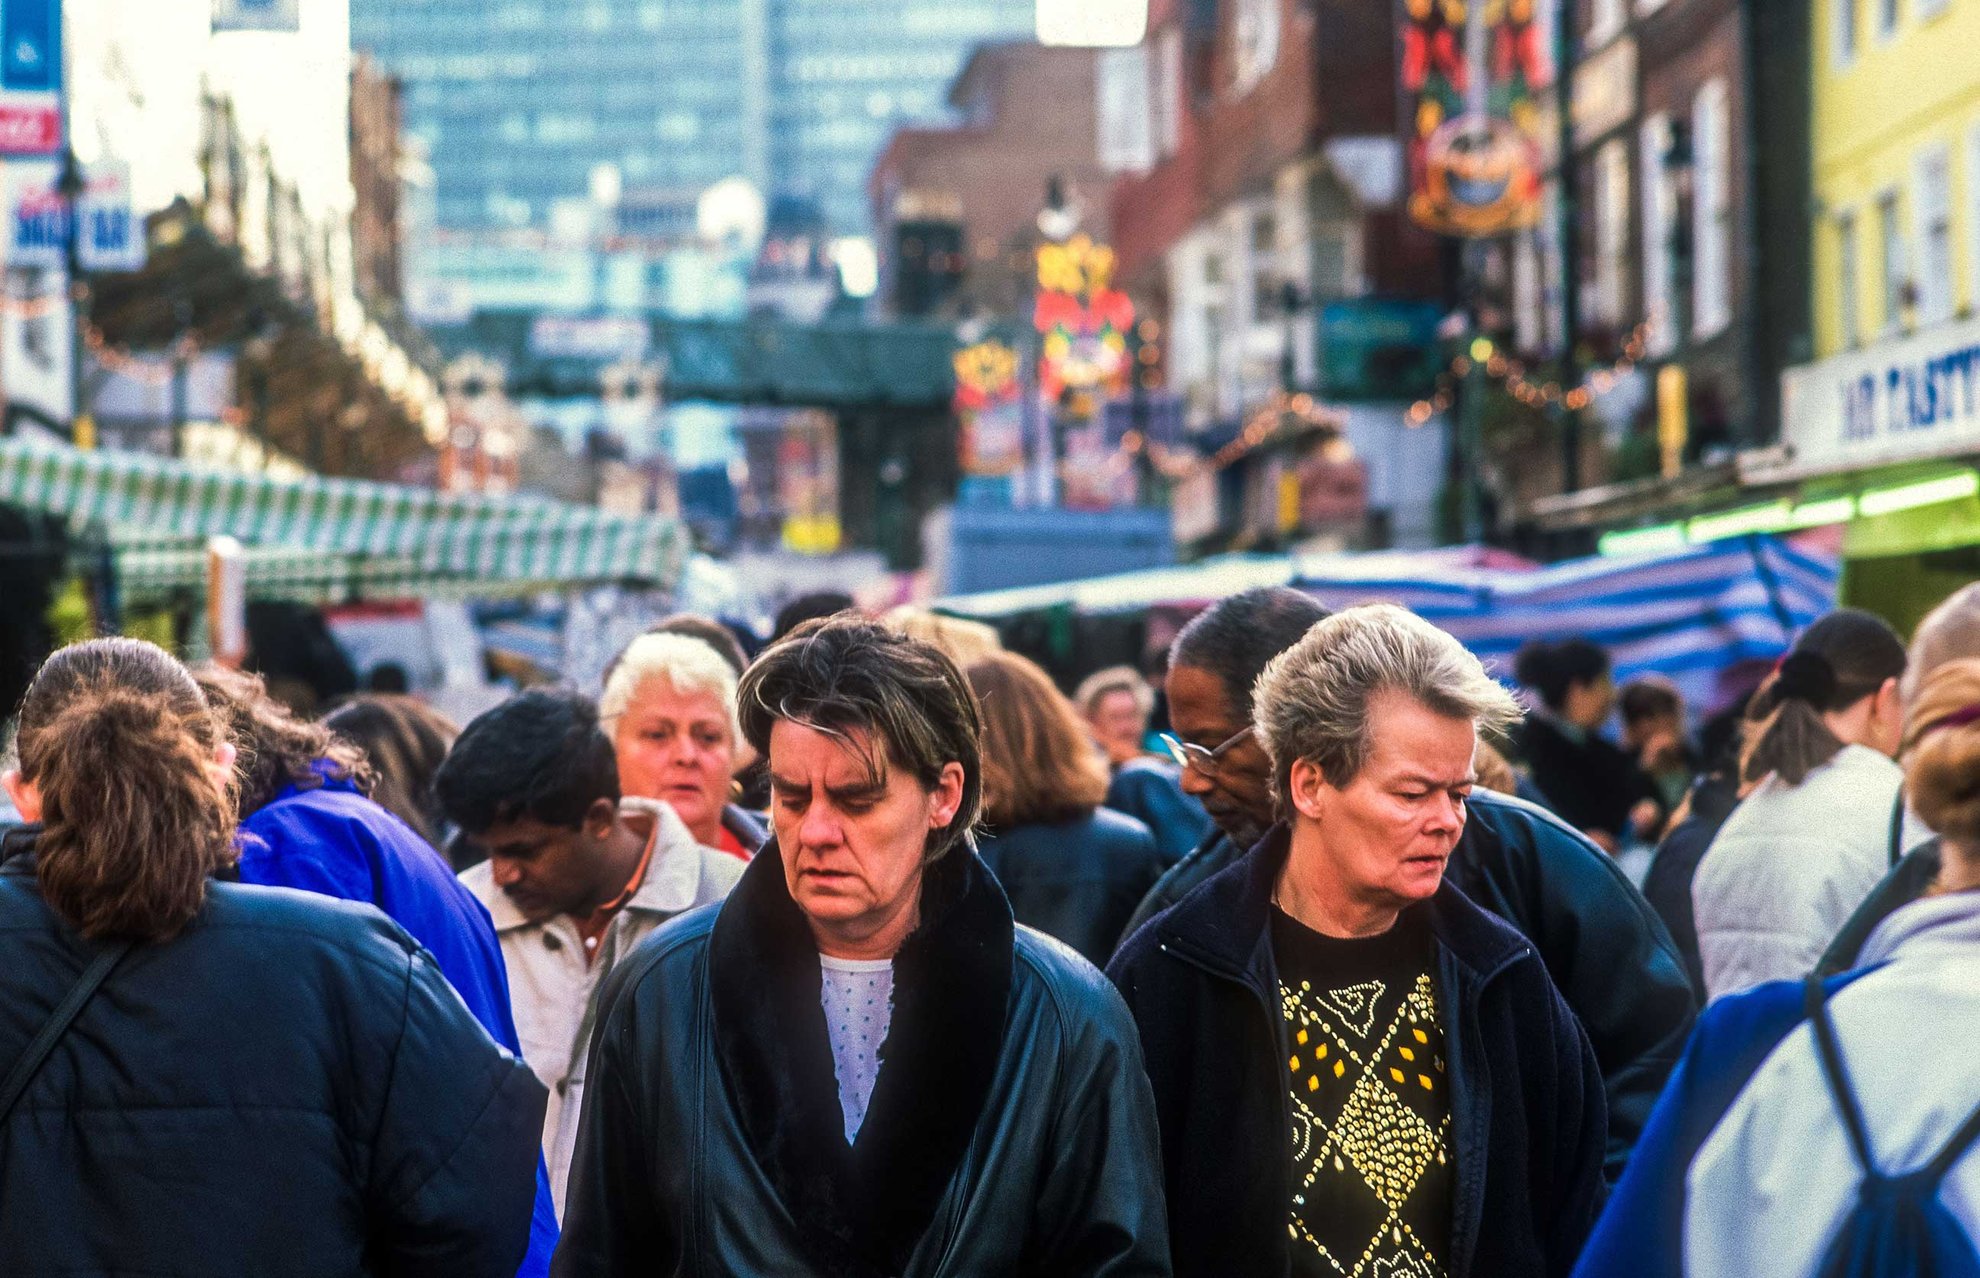 Surrey Street Market, 1999